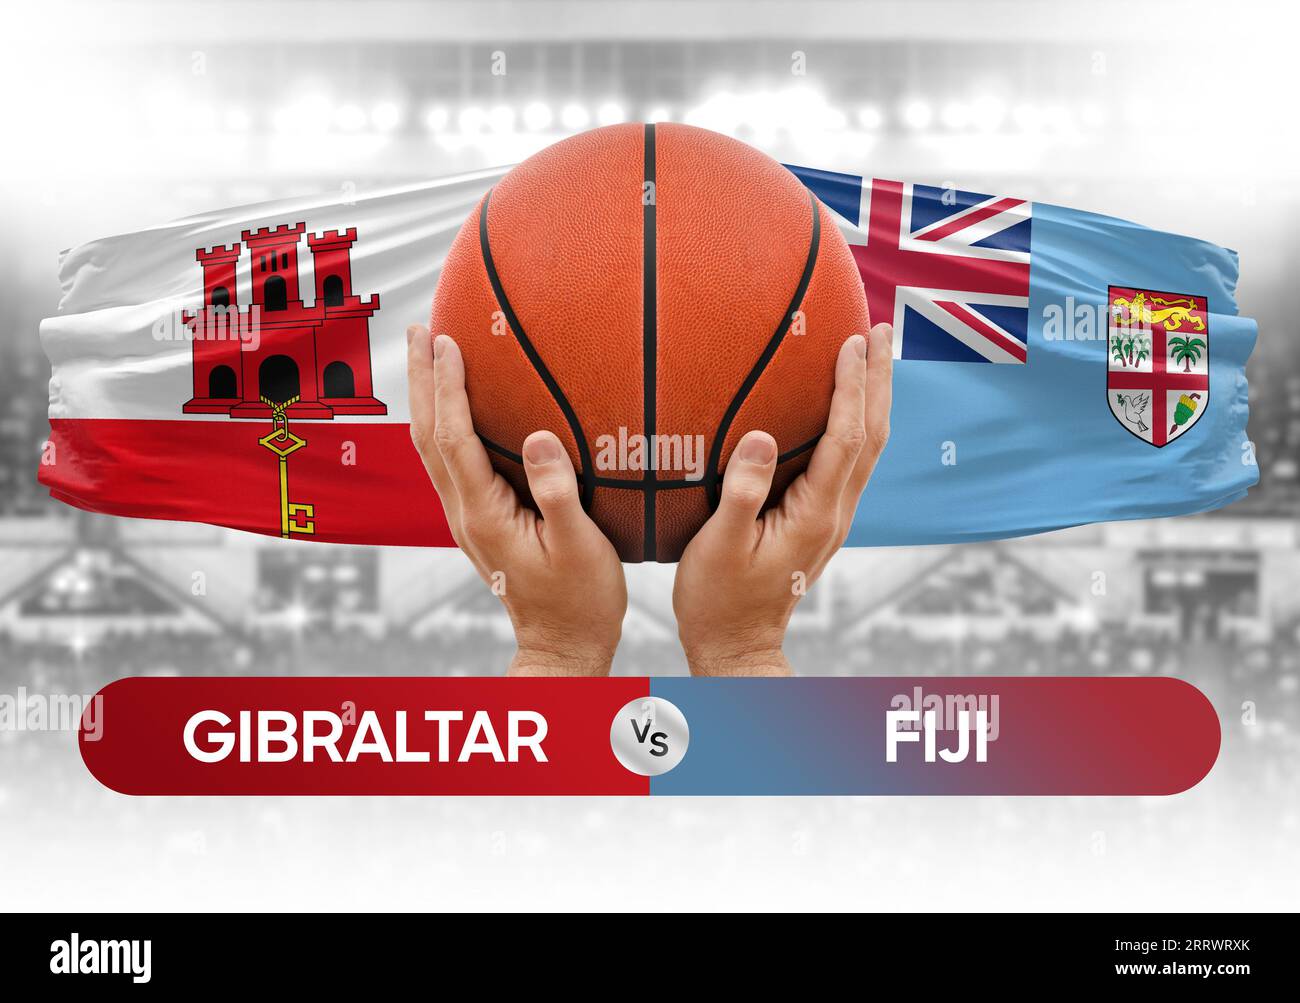 Gibraltar vs Fidschi nationale Basketballmannschaften Basketballspiel Wettbewerb Cup Konzept Bild Stockfoto